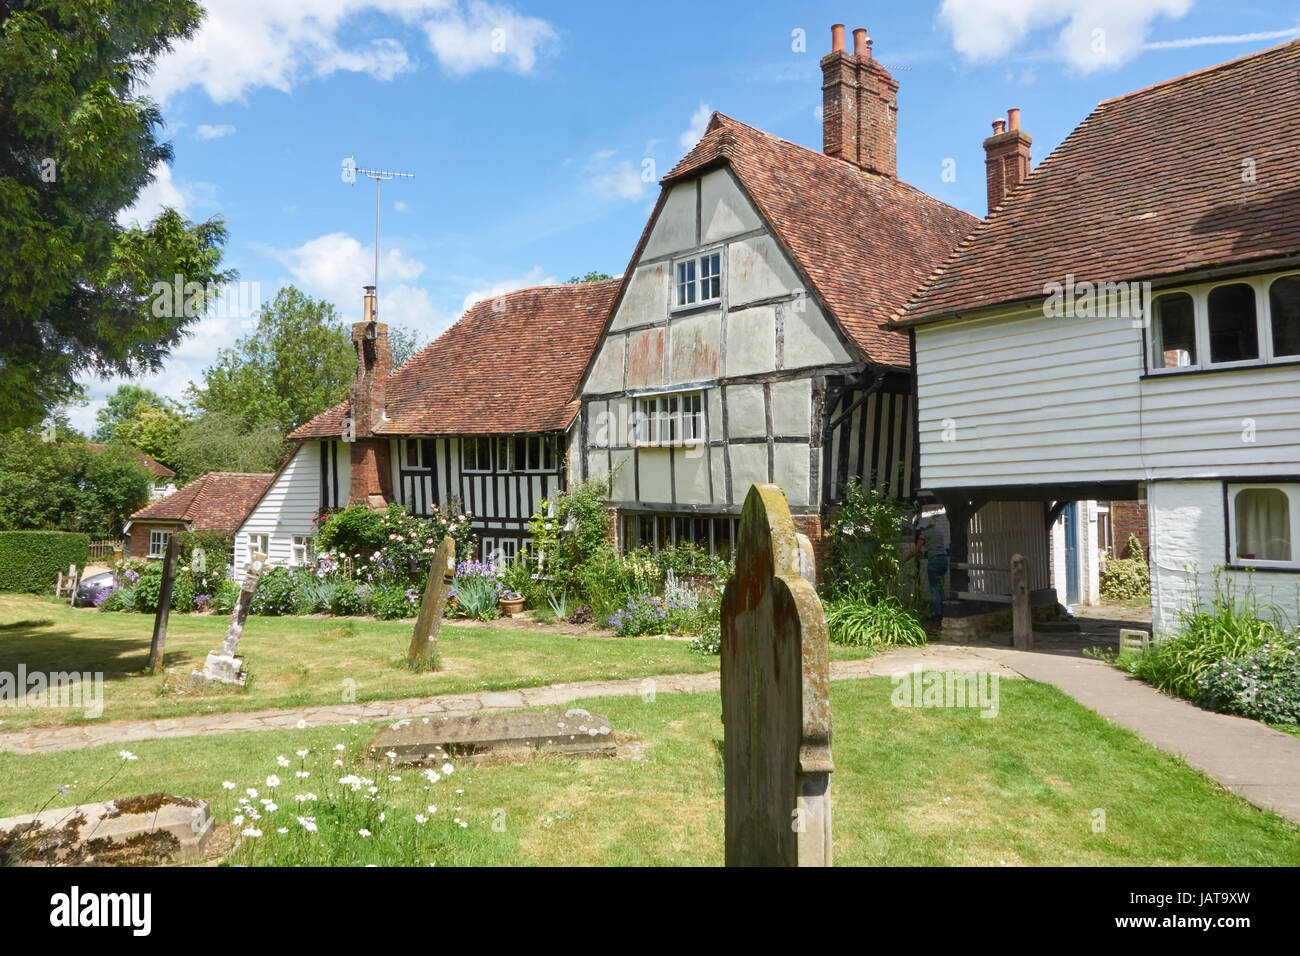 Tudor cottages pittoresques longeant le cimetière dans le pittoresque village de Wealden Kentish Smarden, Kent, Angleterre, Royaume-Uni, UK, Grande-Bretagne, GO Banque D'Images